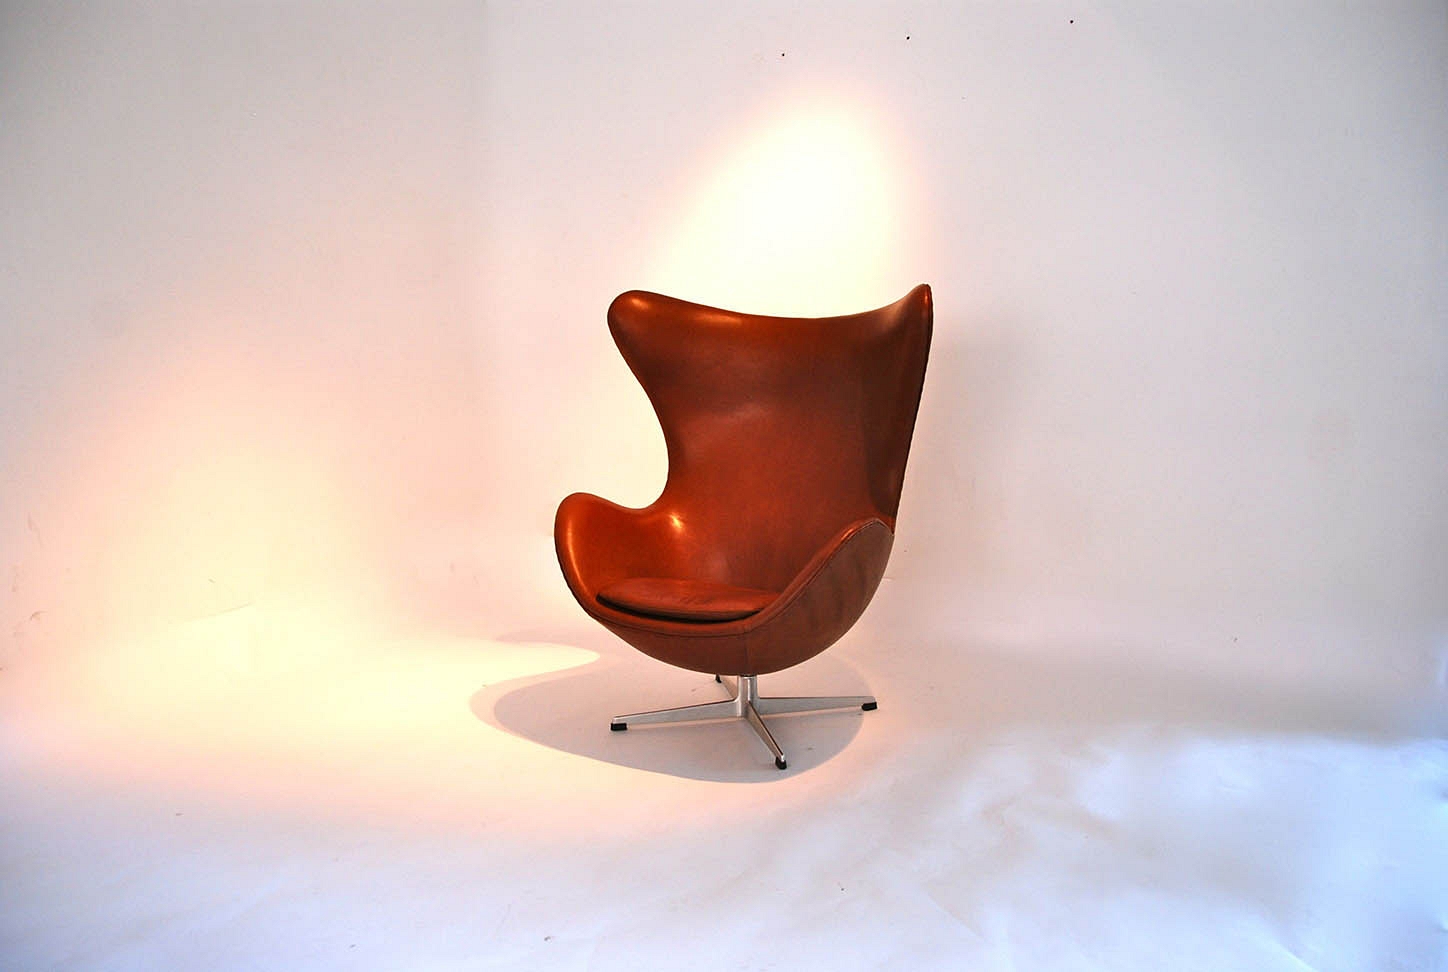 Arne Jacobsen "egg chair"